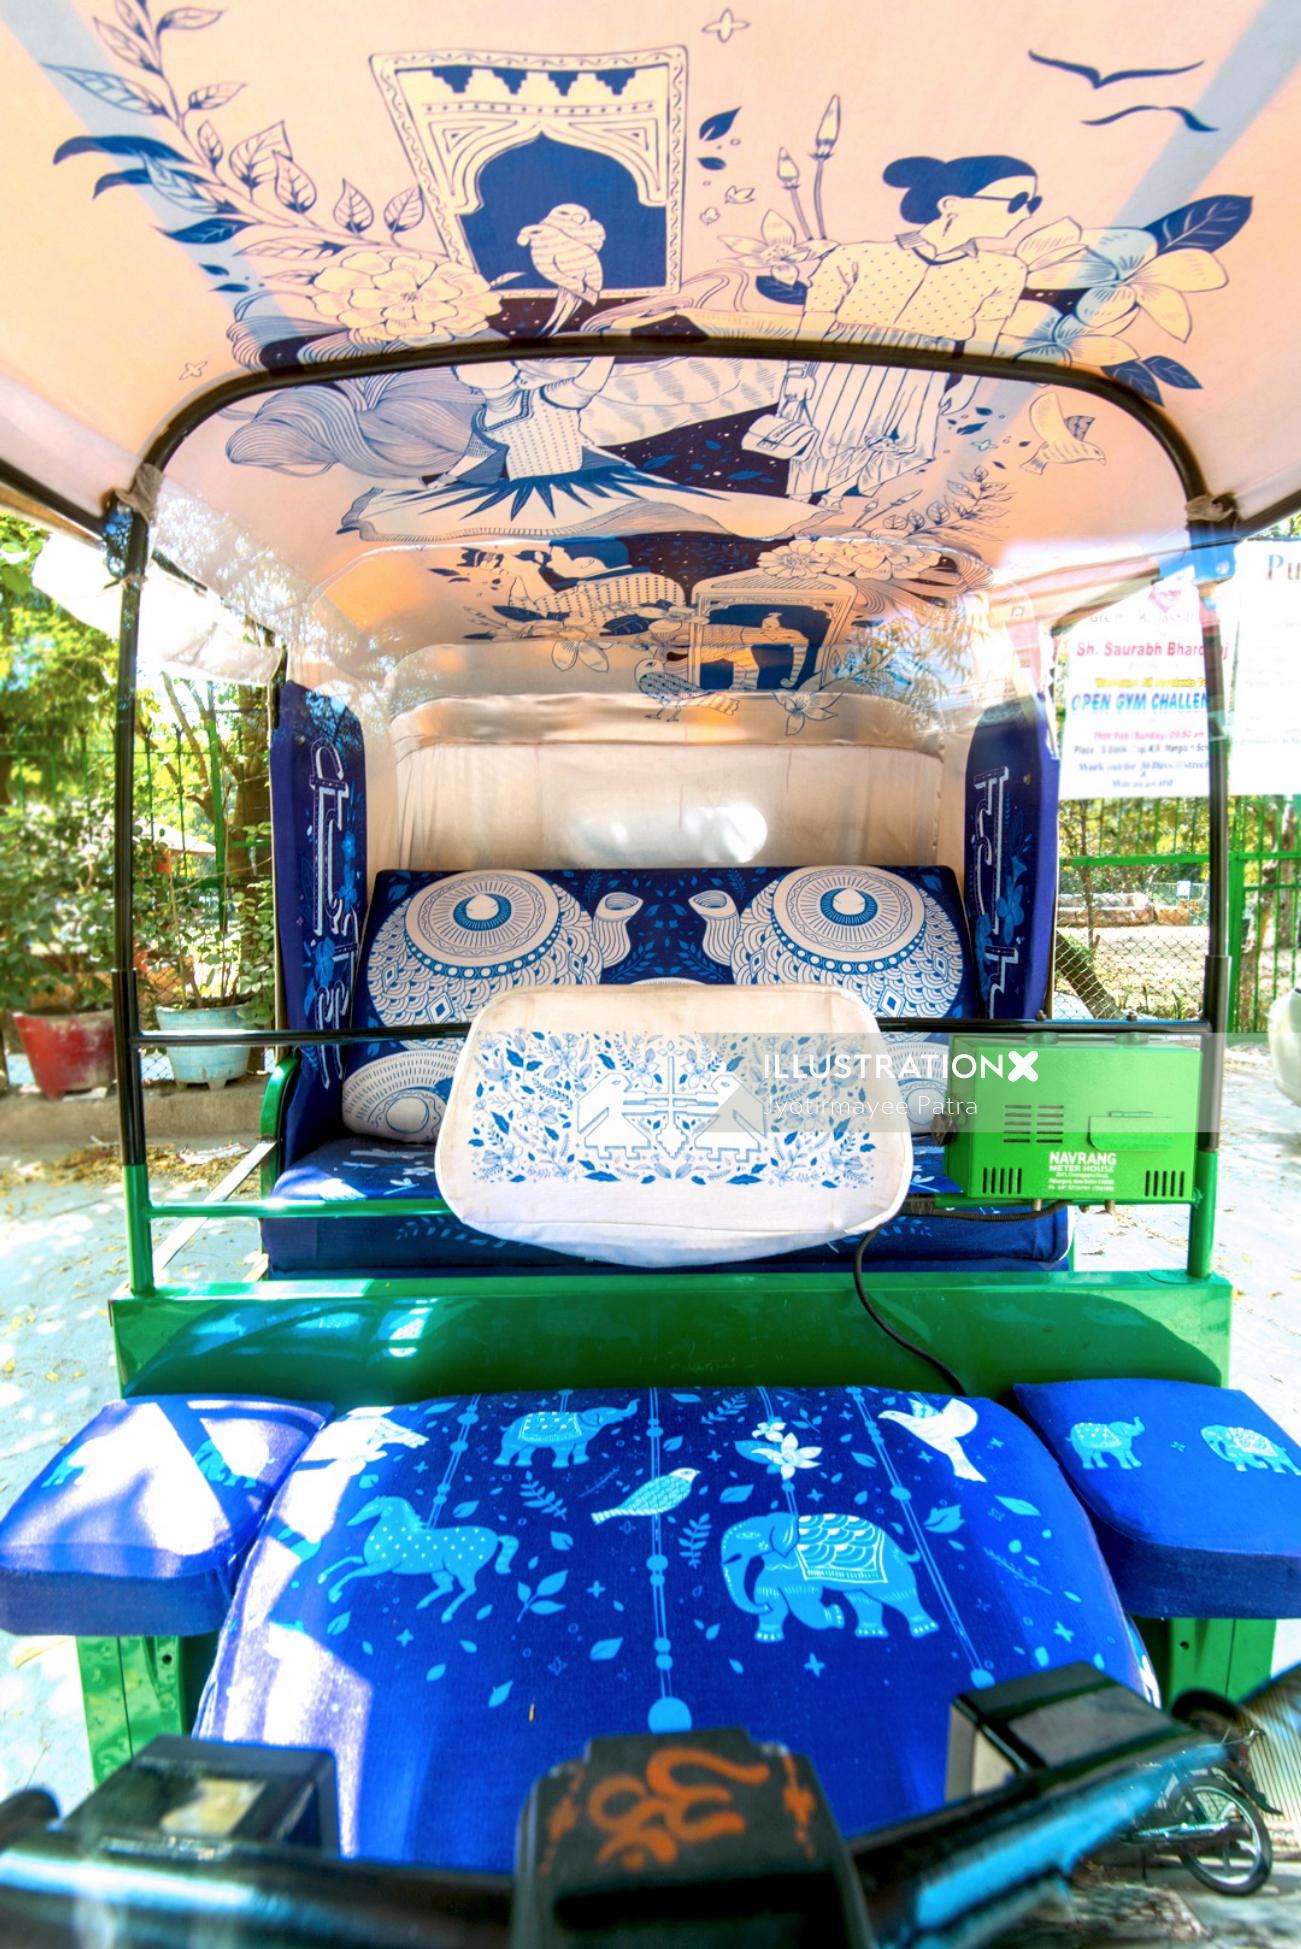 Arte de instalación - Auto Rickshaw